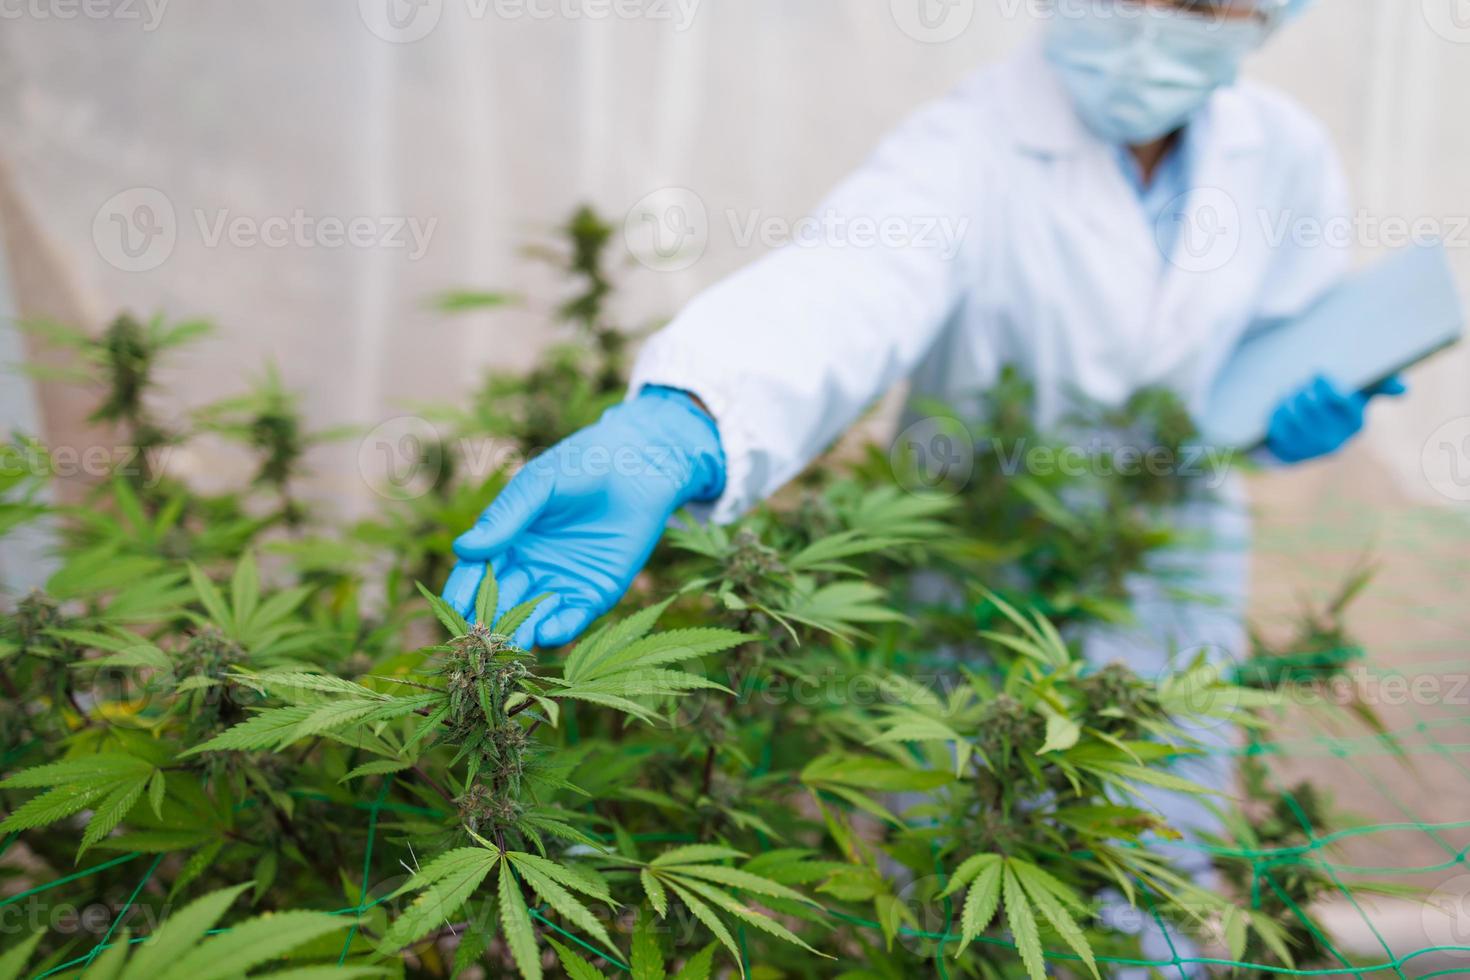 onderzoekers gebruik hand- naar houden of onderzoeken hennep planten in de kas voor medisch Onderzoek. marihuana sativa Onderzoek concept. cbd hennep olie, kruiden geneesmiddel. foto